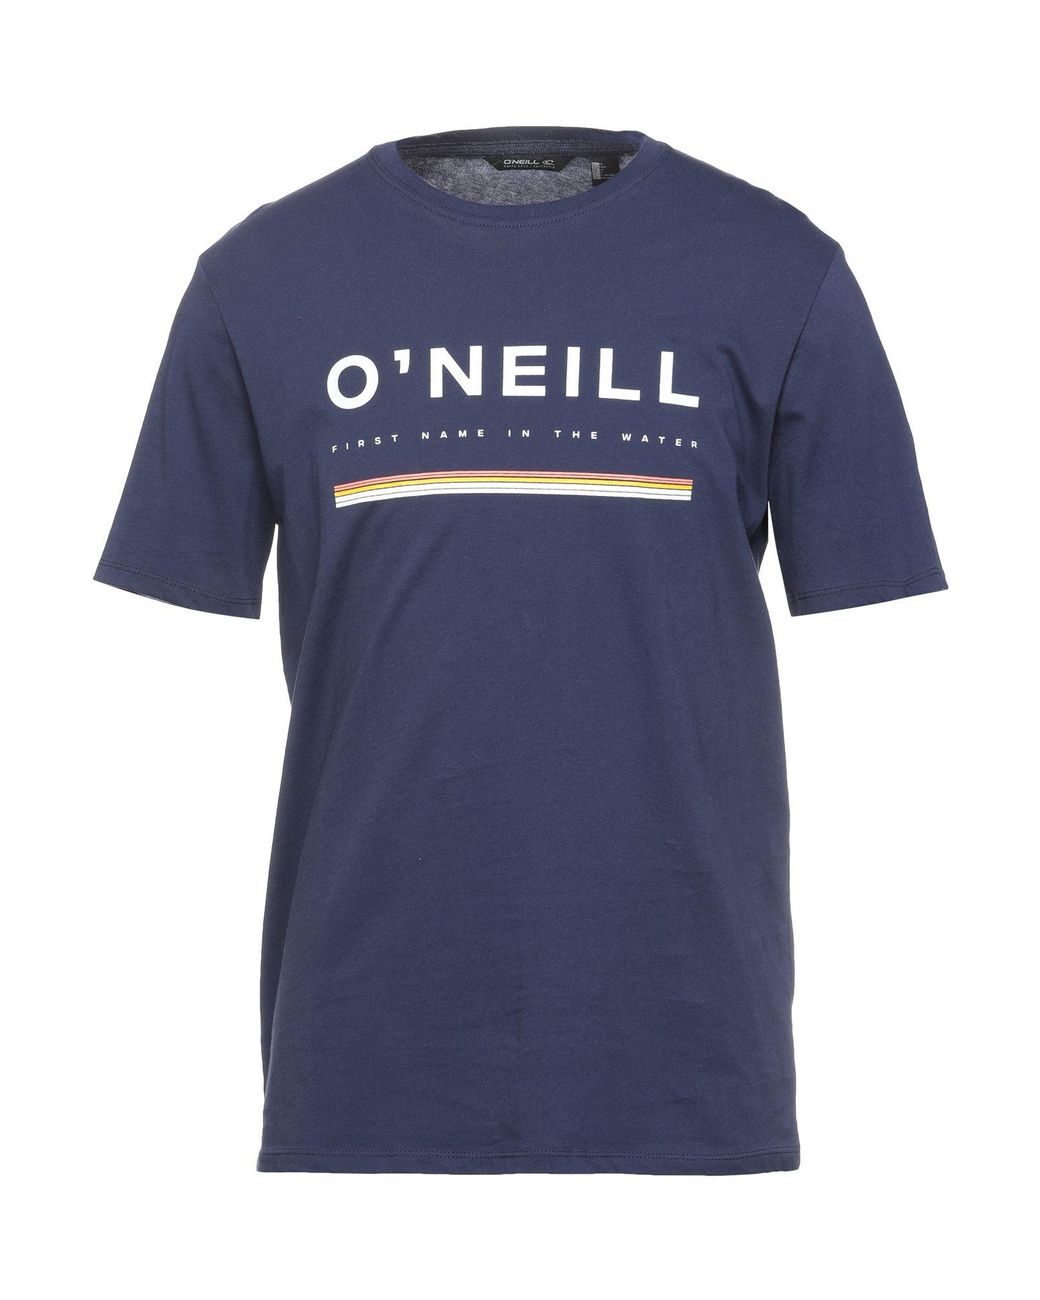 O'neill Sportswear Cotton T-shirt in Dark Blue (Blue) for Men - Lyst